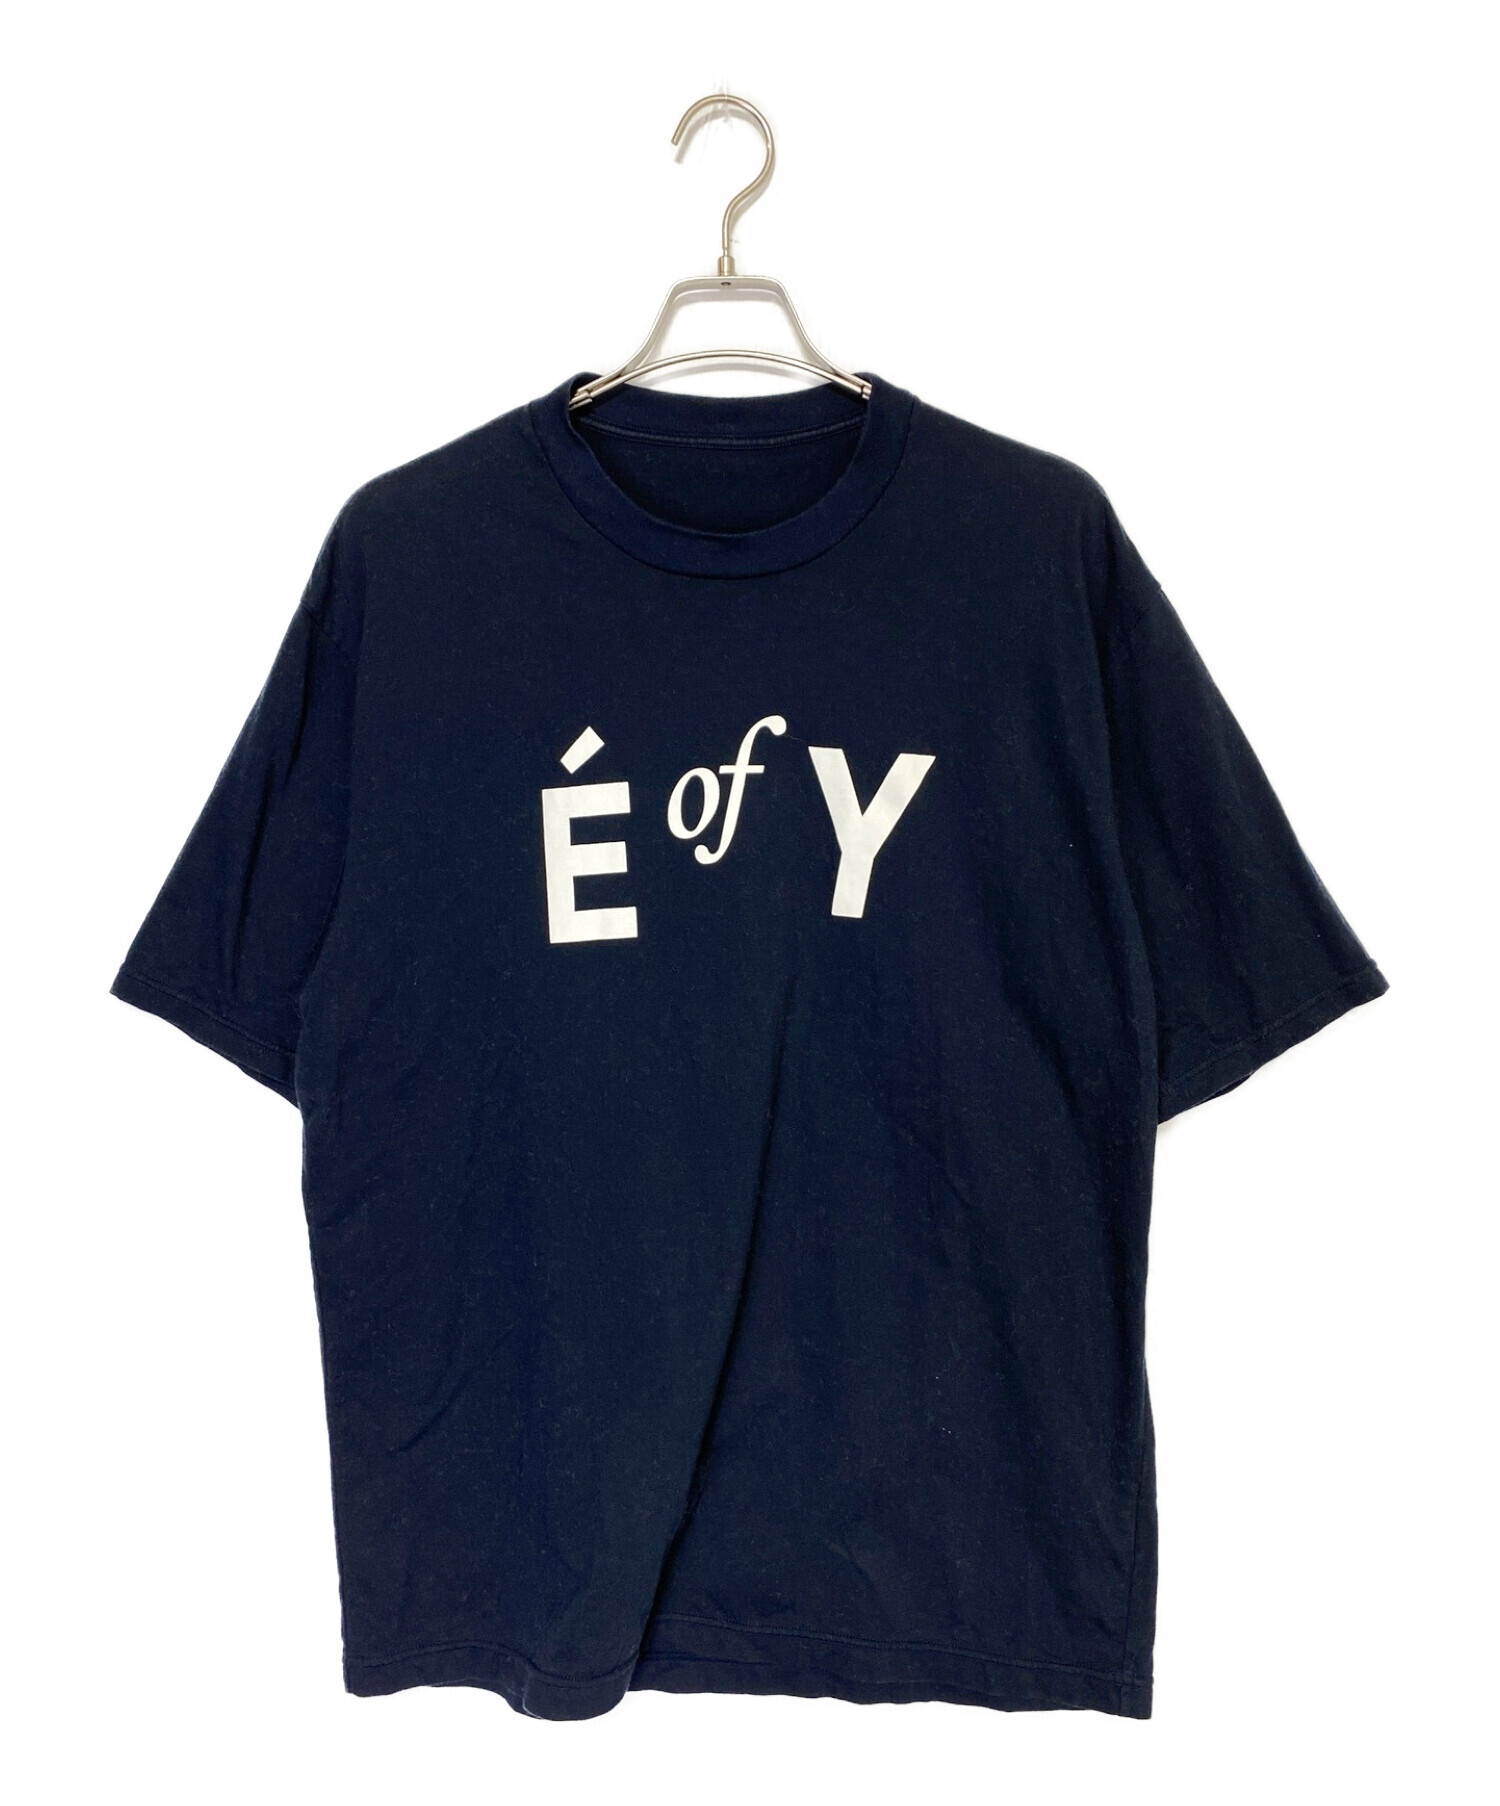 ENNOY (エンノイ) Tシャツ ネイビー サイズ:XL